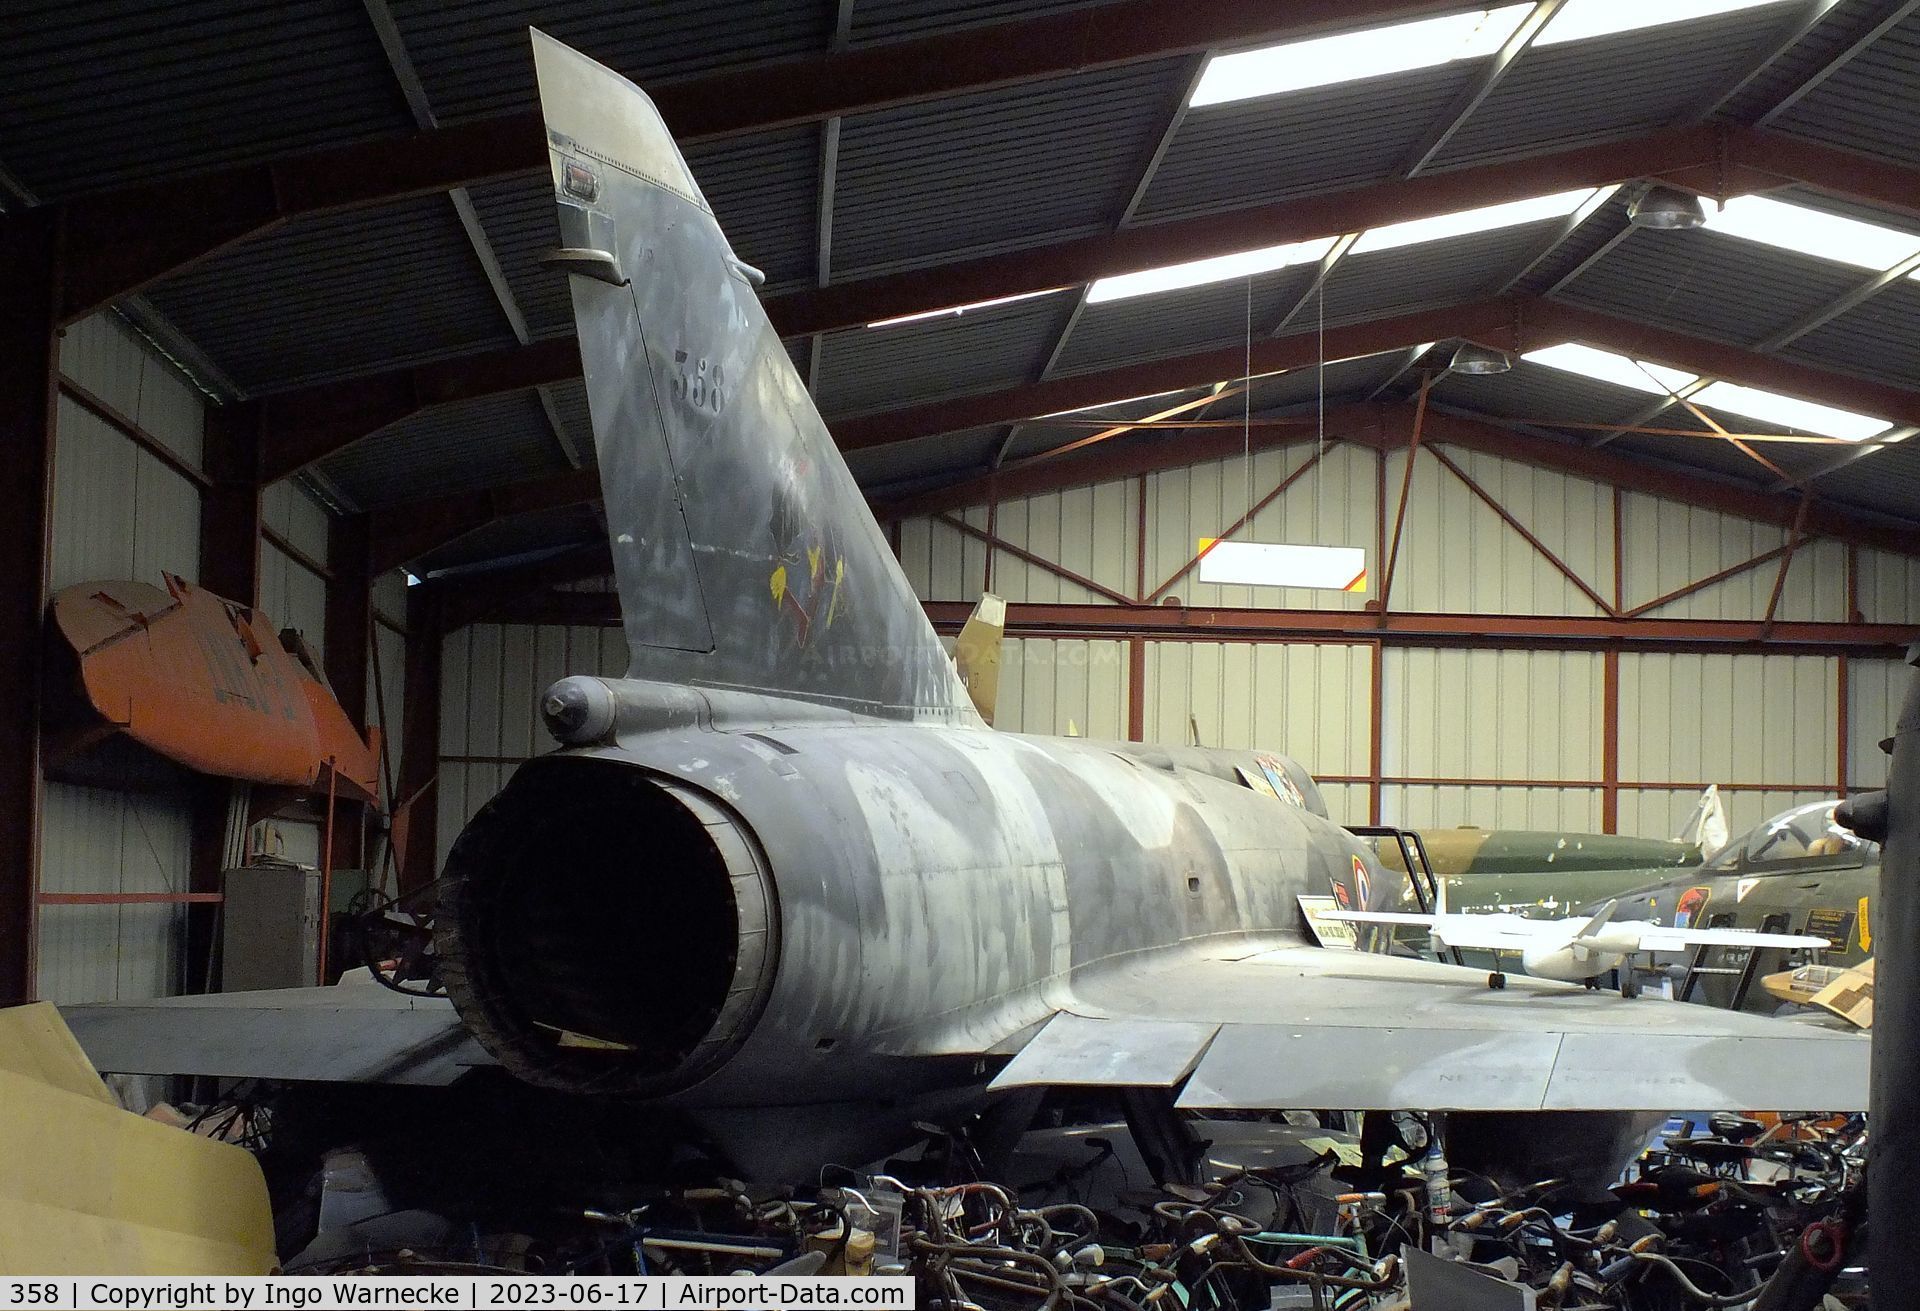 358, Dassault Mirage IIIRD C/N 358, Dassault Mirage III RD at the Musee de l'Epopee de l'Industrie et de l'Aeronautique, Albert